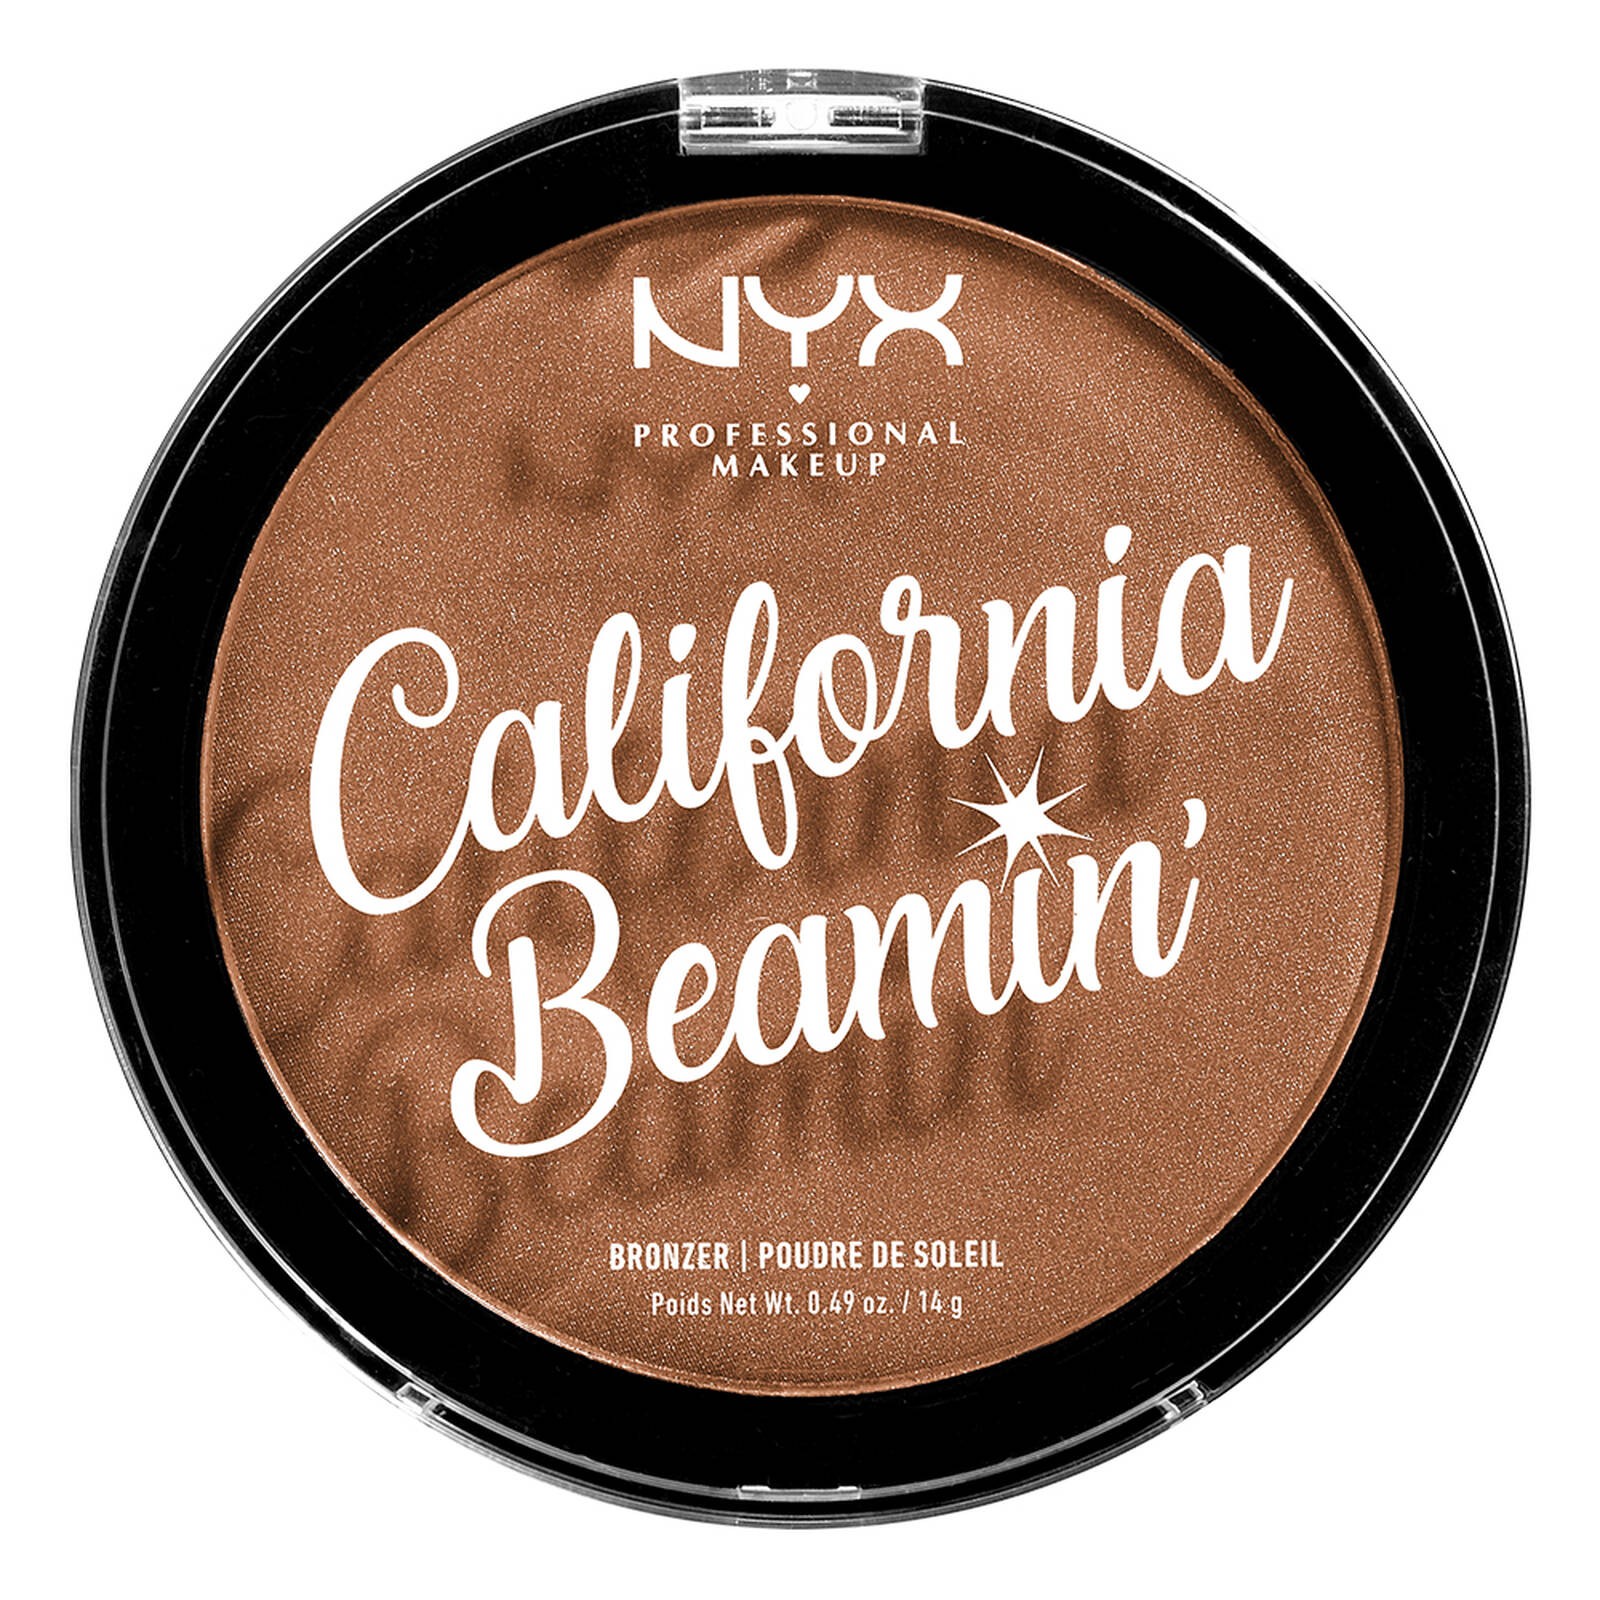 California Beamin' Face & Body Bronzer